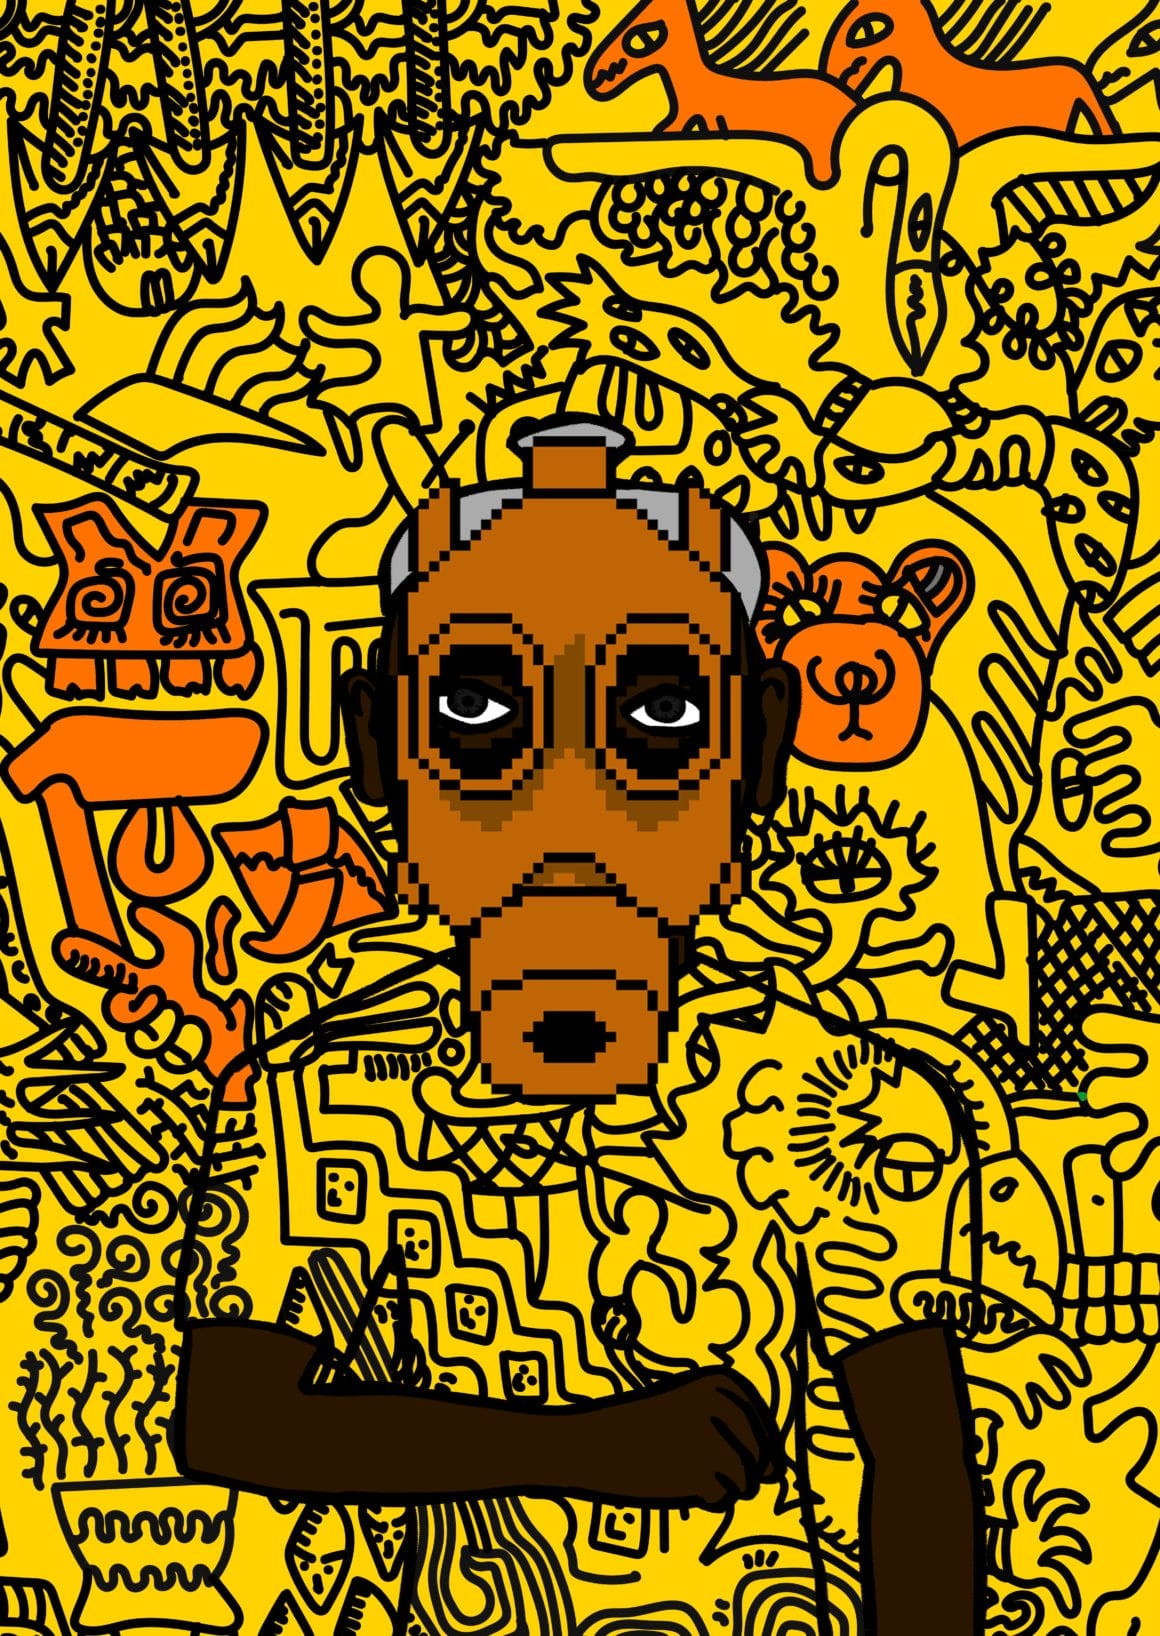 Le tee shirt du personnage et le fond ont les mêmes motifs noirs sur jaune. Le personnage porte un masque orange.